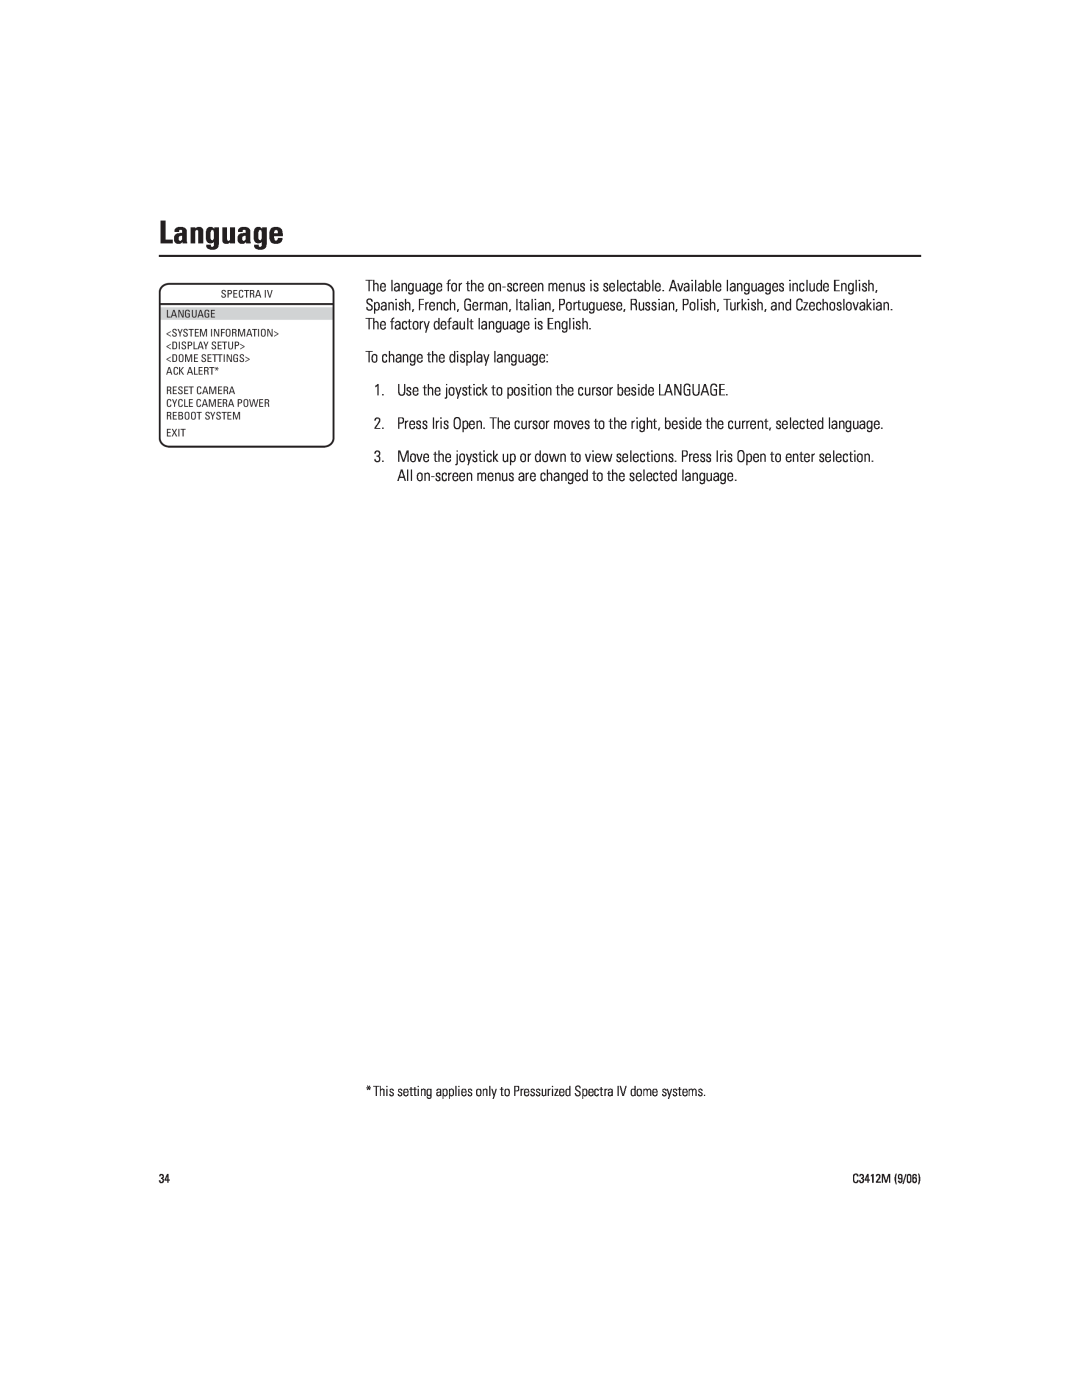 Pelco IV SE manual Language, To change the display language 